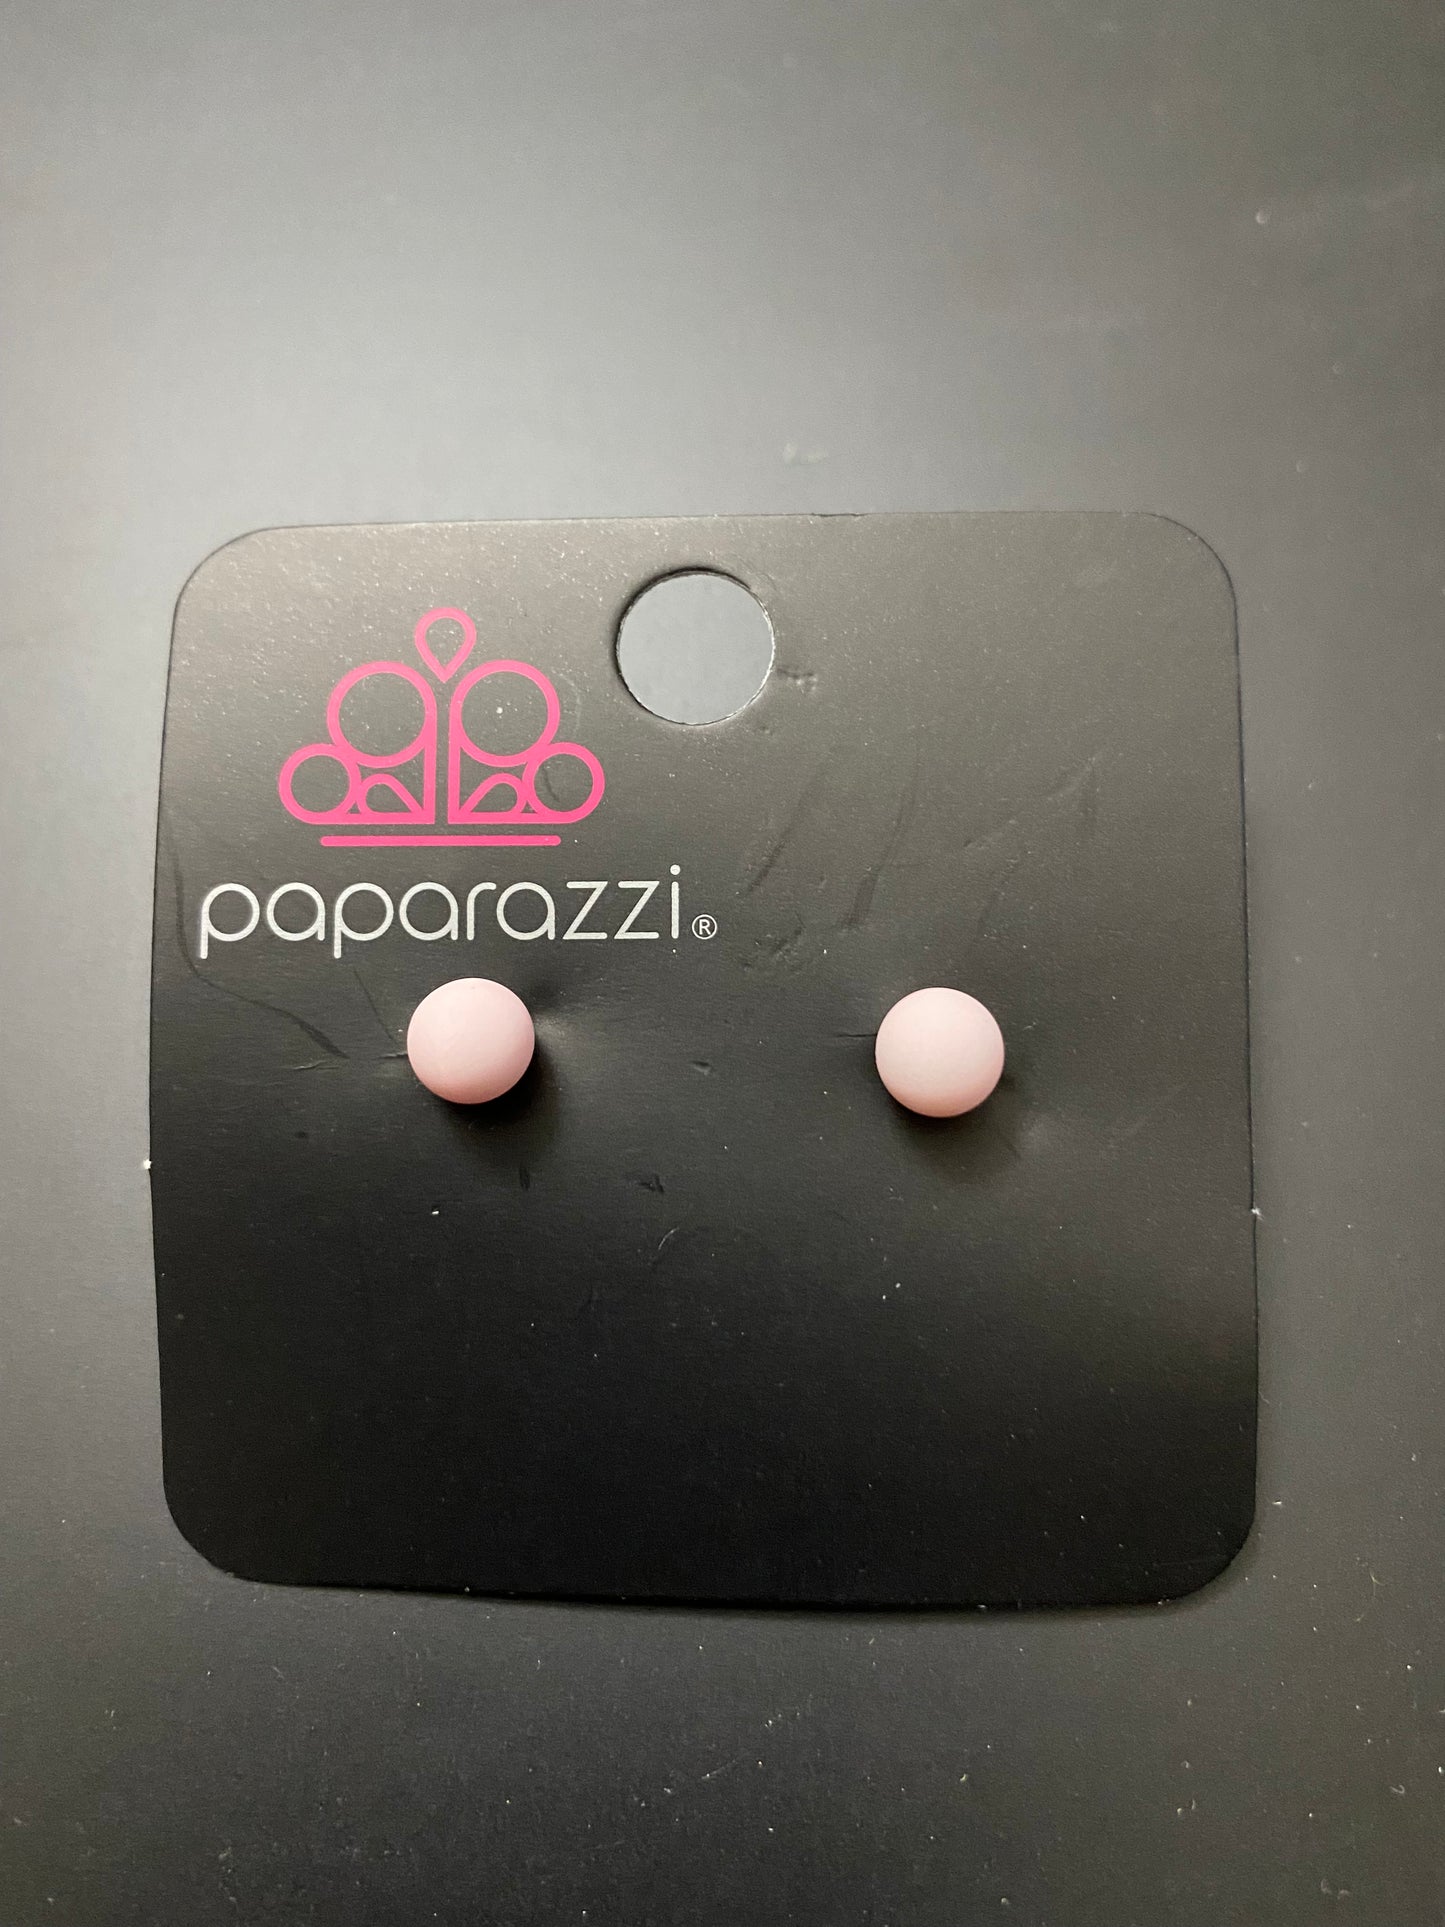 Dots - Paparazzi $1 Little Diva earrings